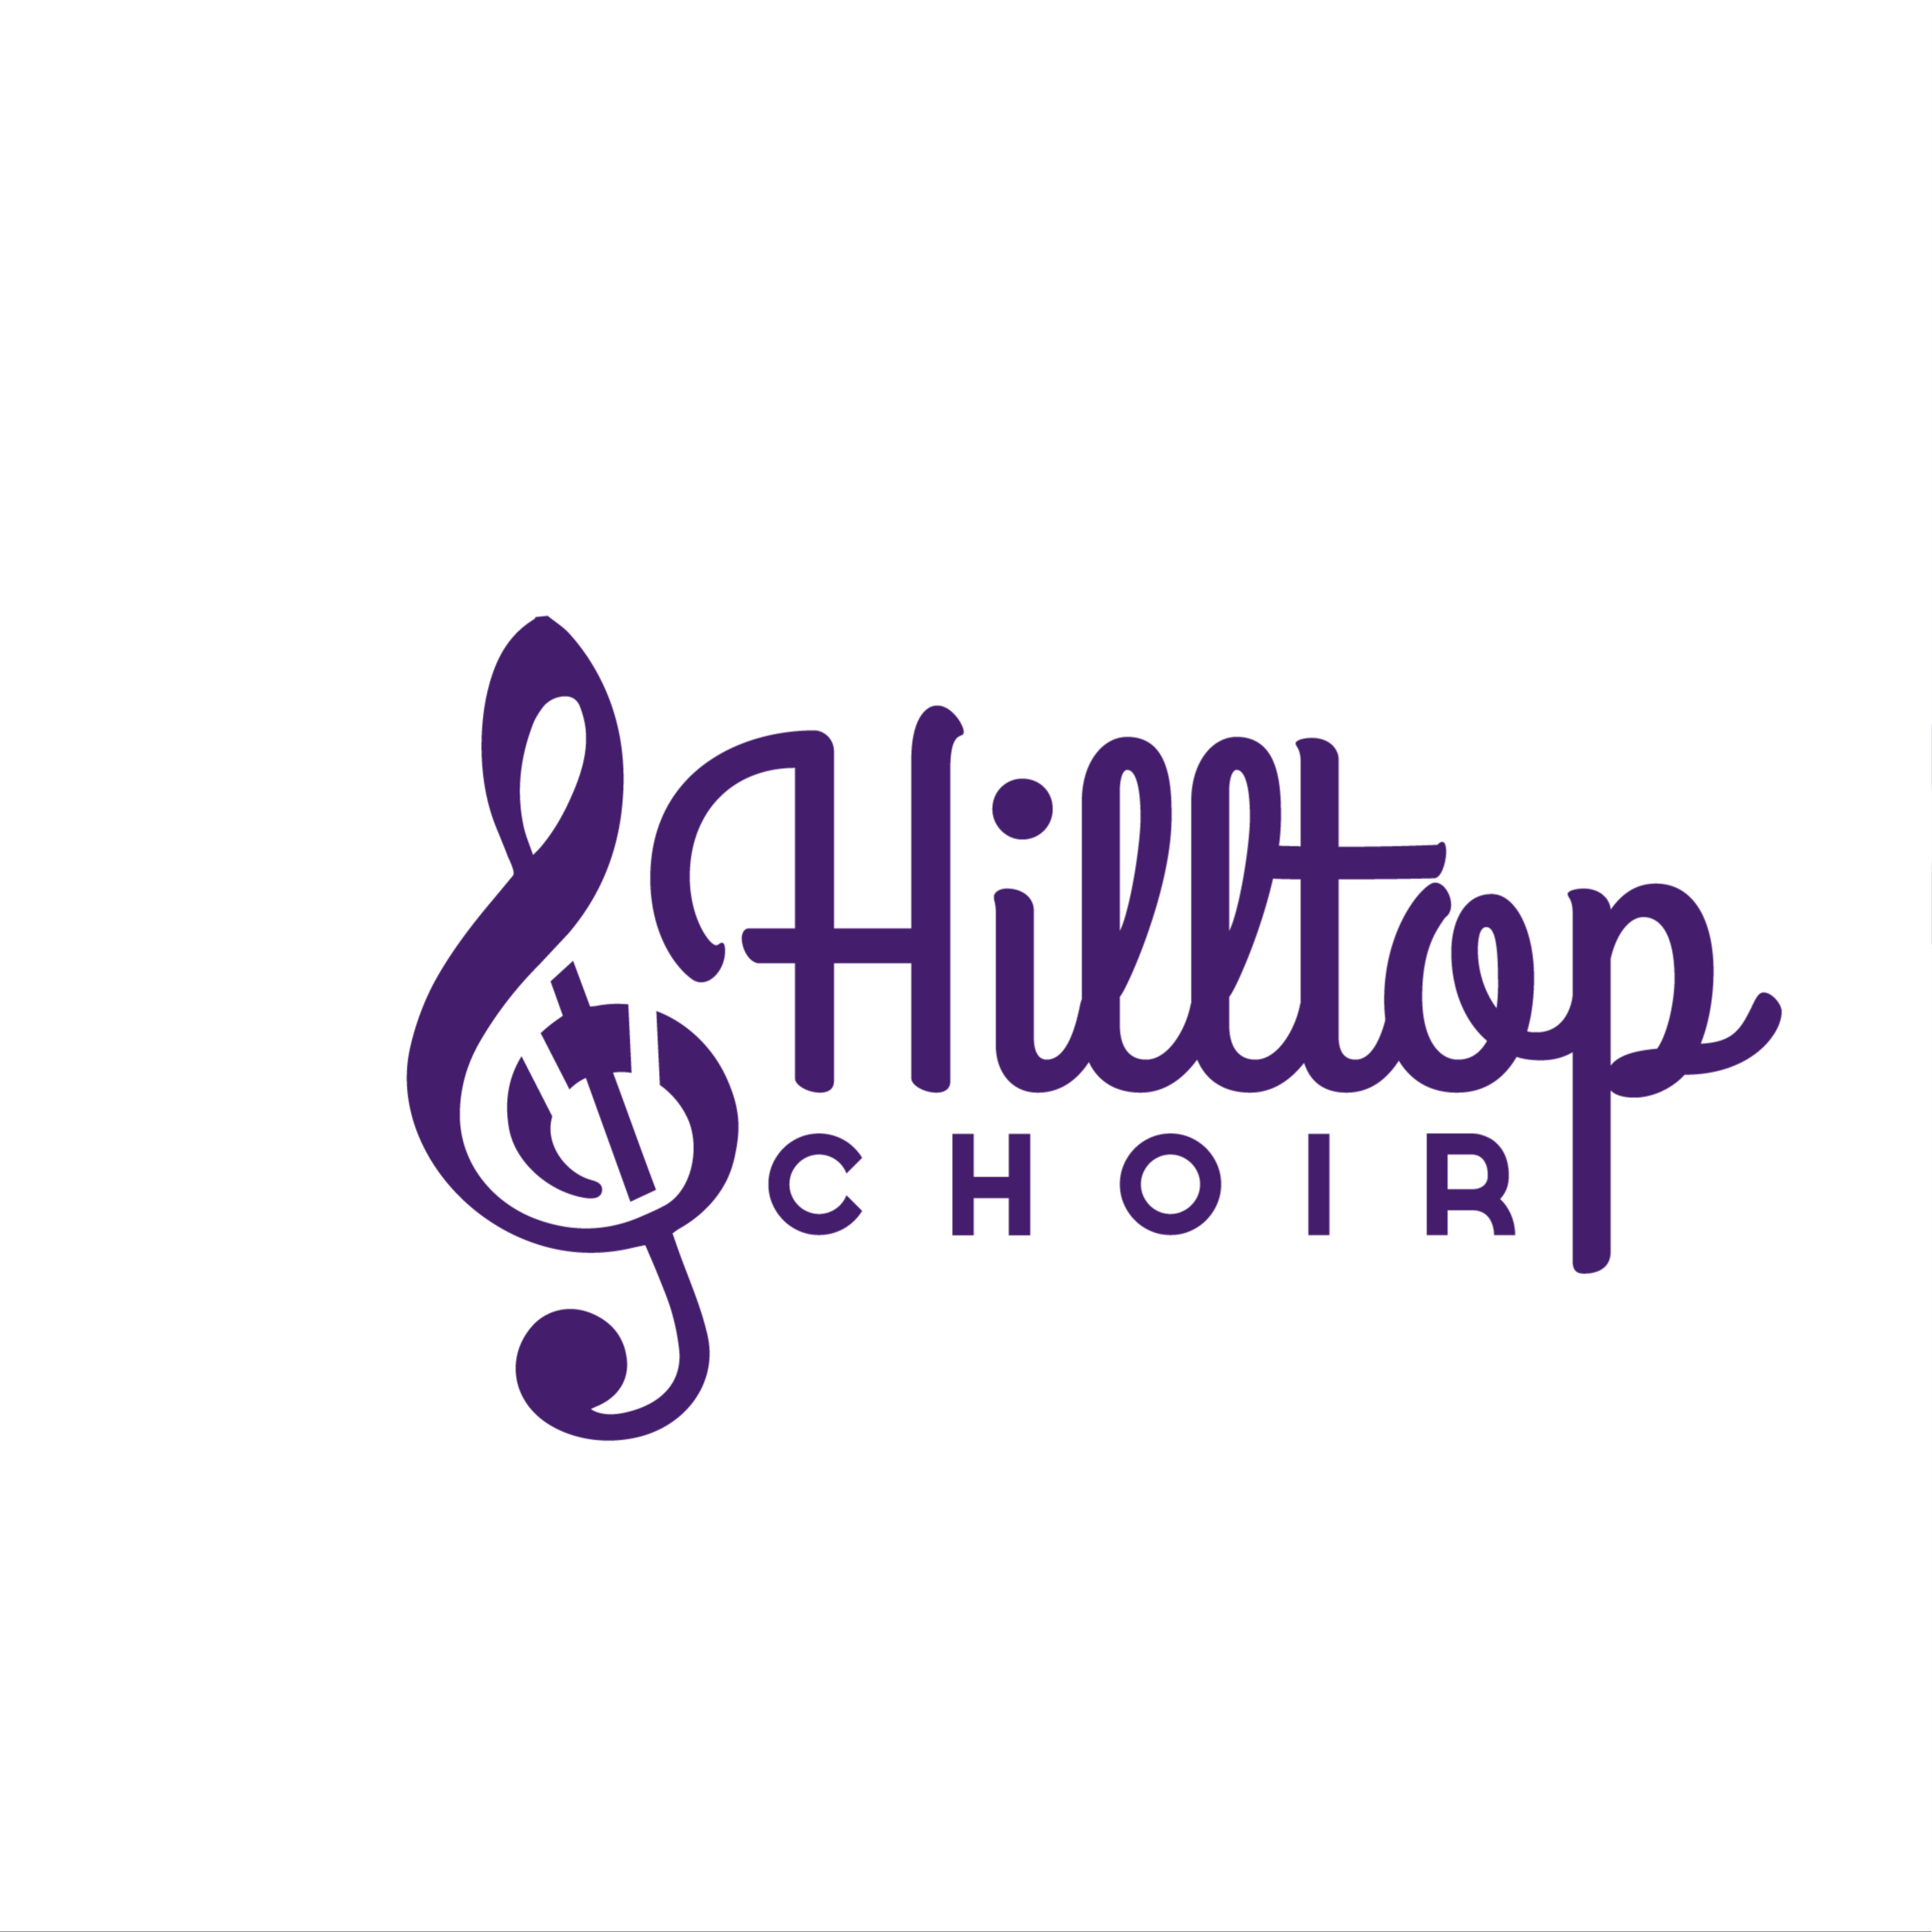 Hilltop Choir